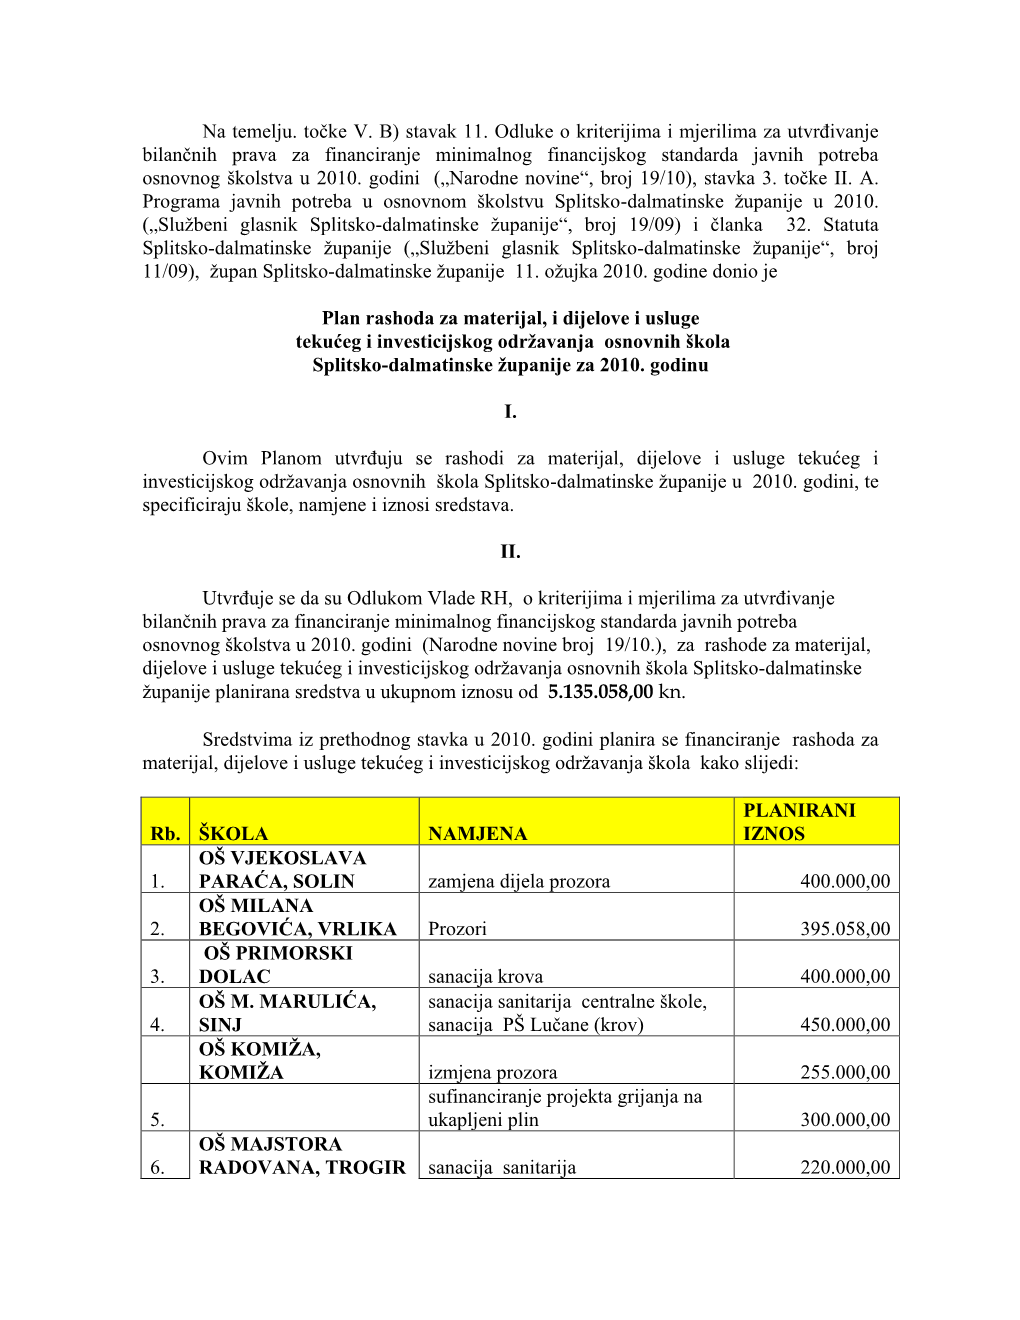 Plan Rashoda Za Materijal, I Dijelove I Usluge Tekućeg I Investicijskog Održavanja Osnovnih Škola Splitsko-Dalmatinske Županije Za 2010